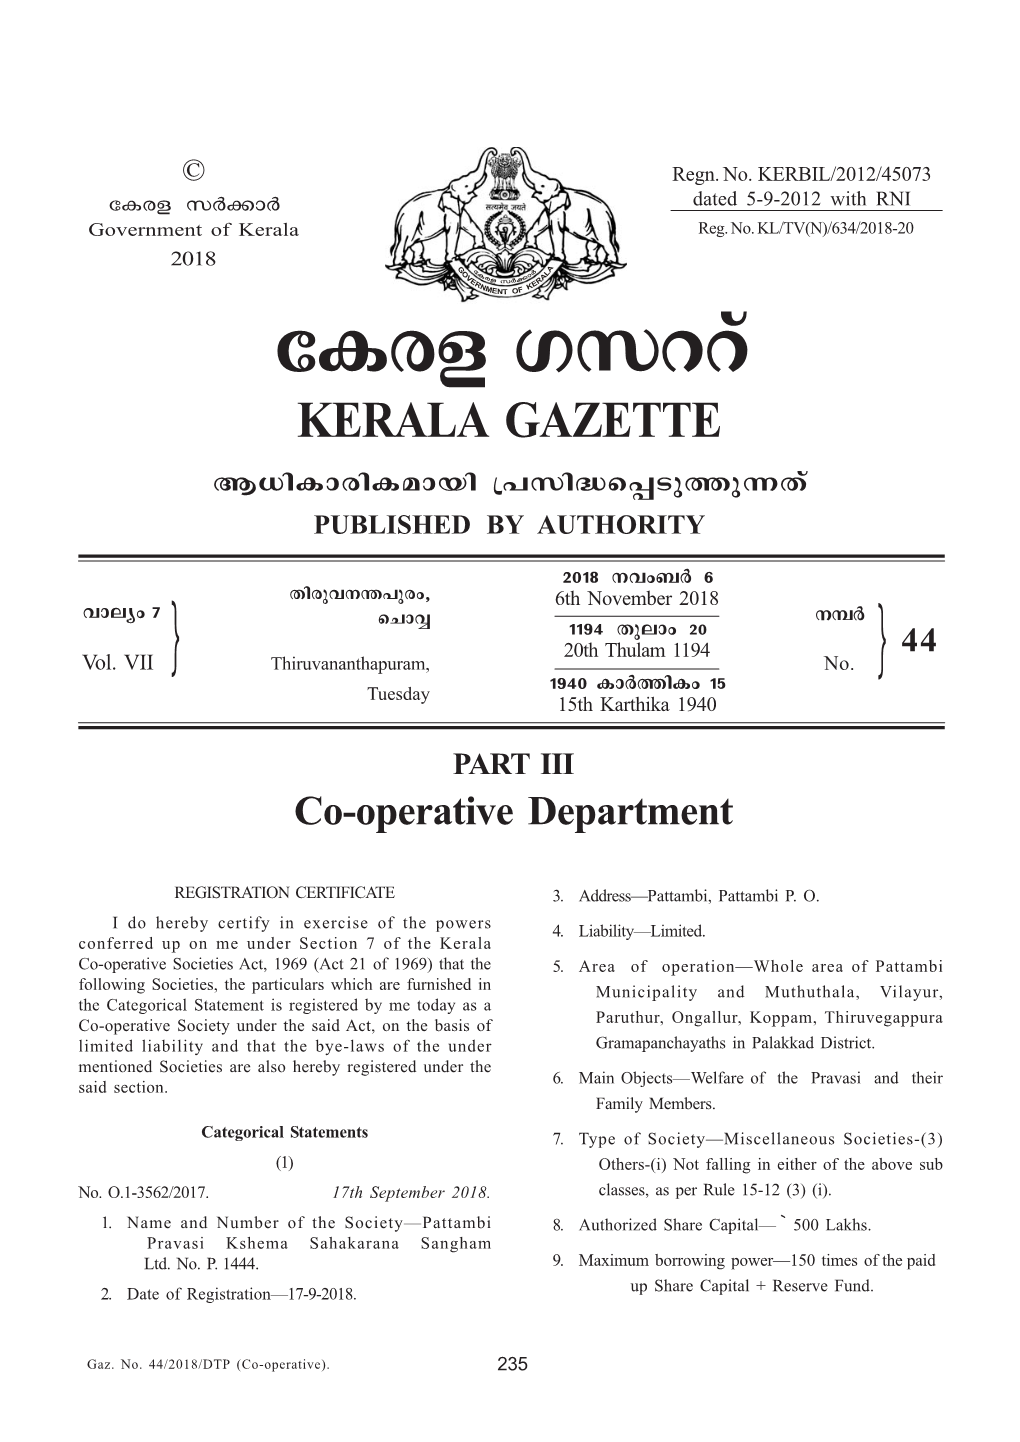 Co-Operative (321-322)